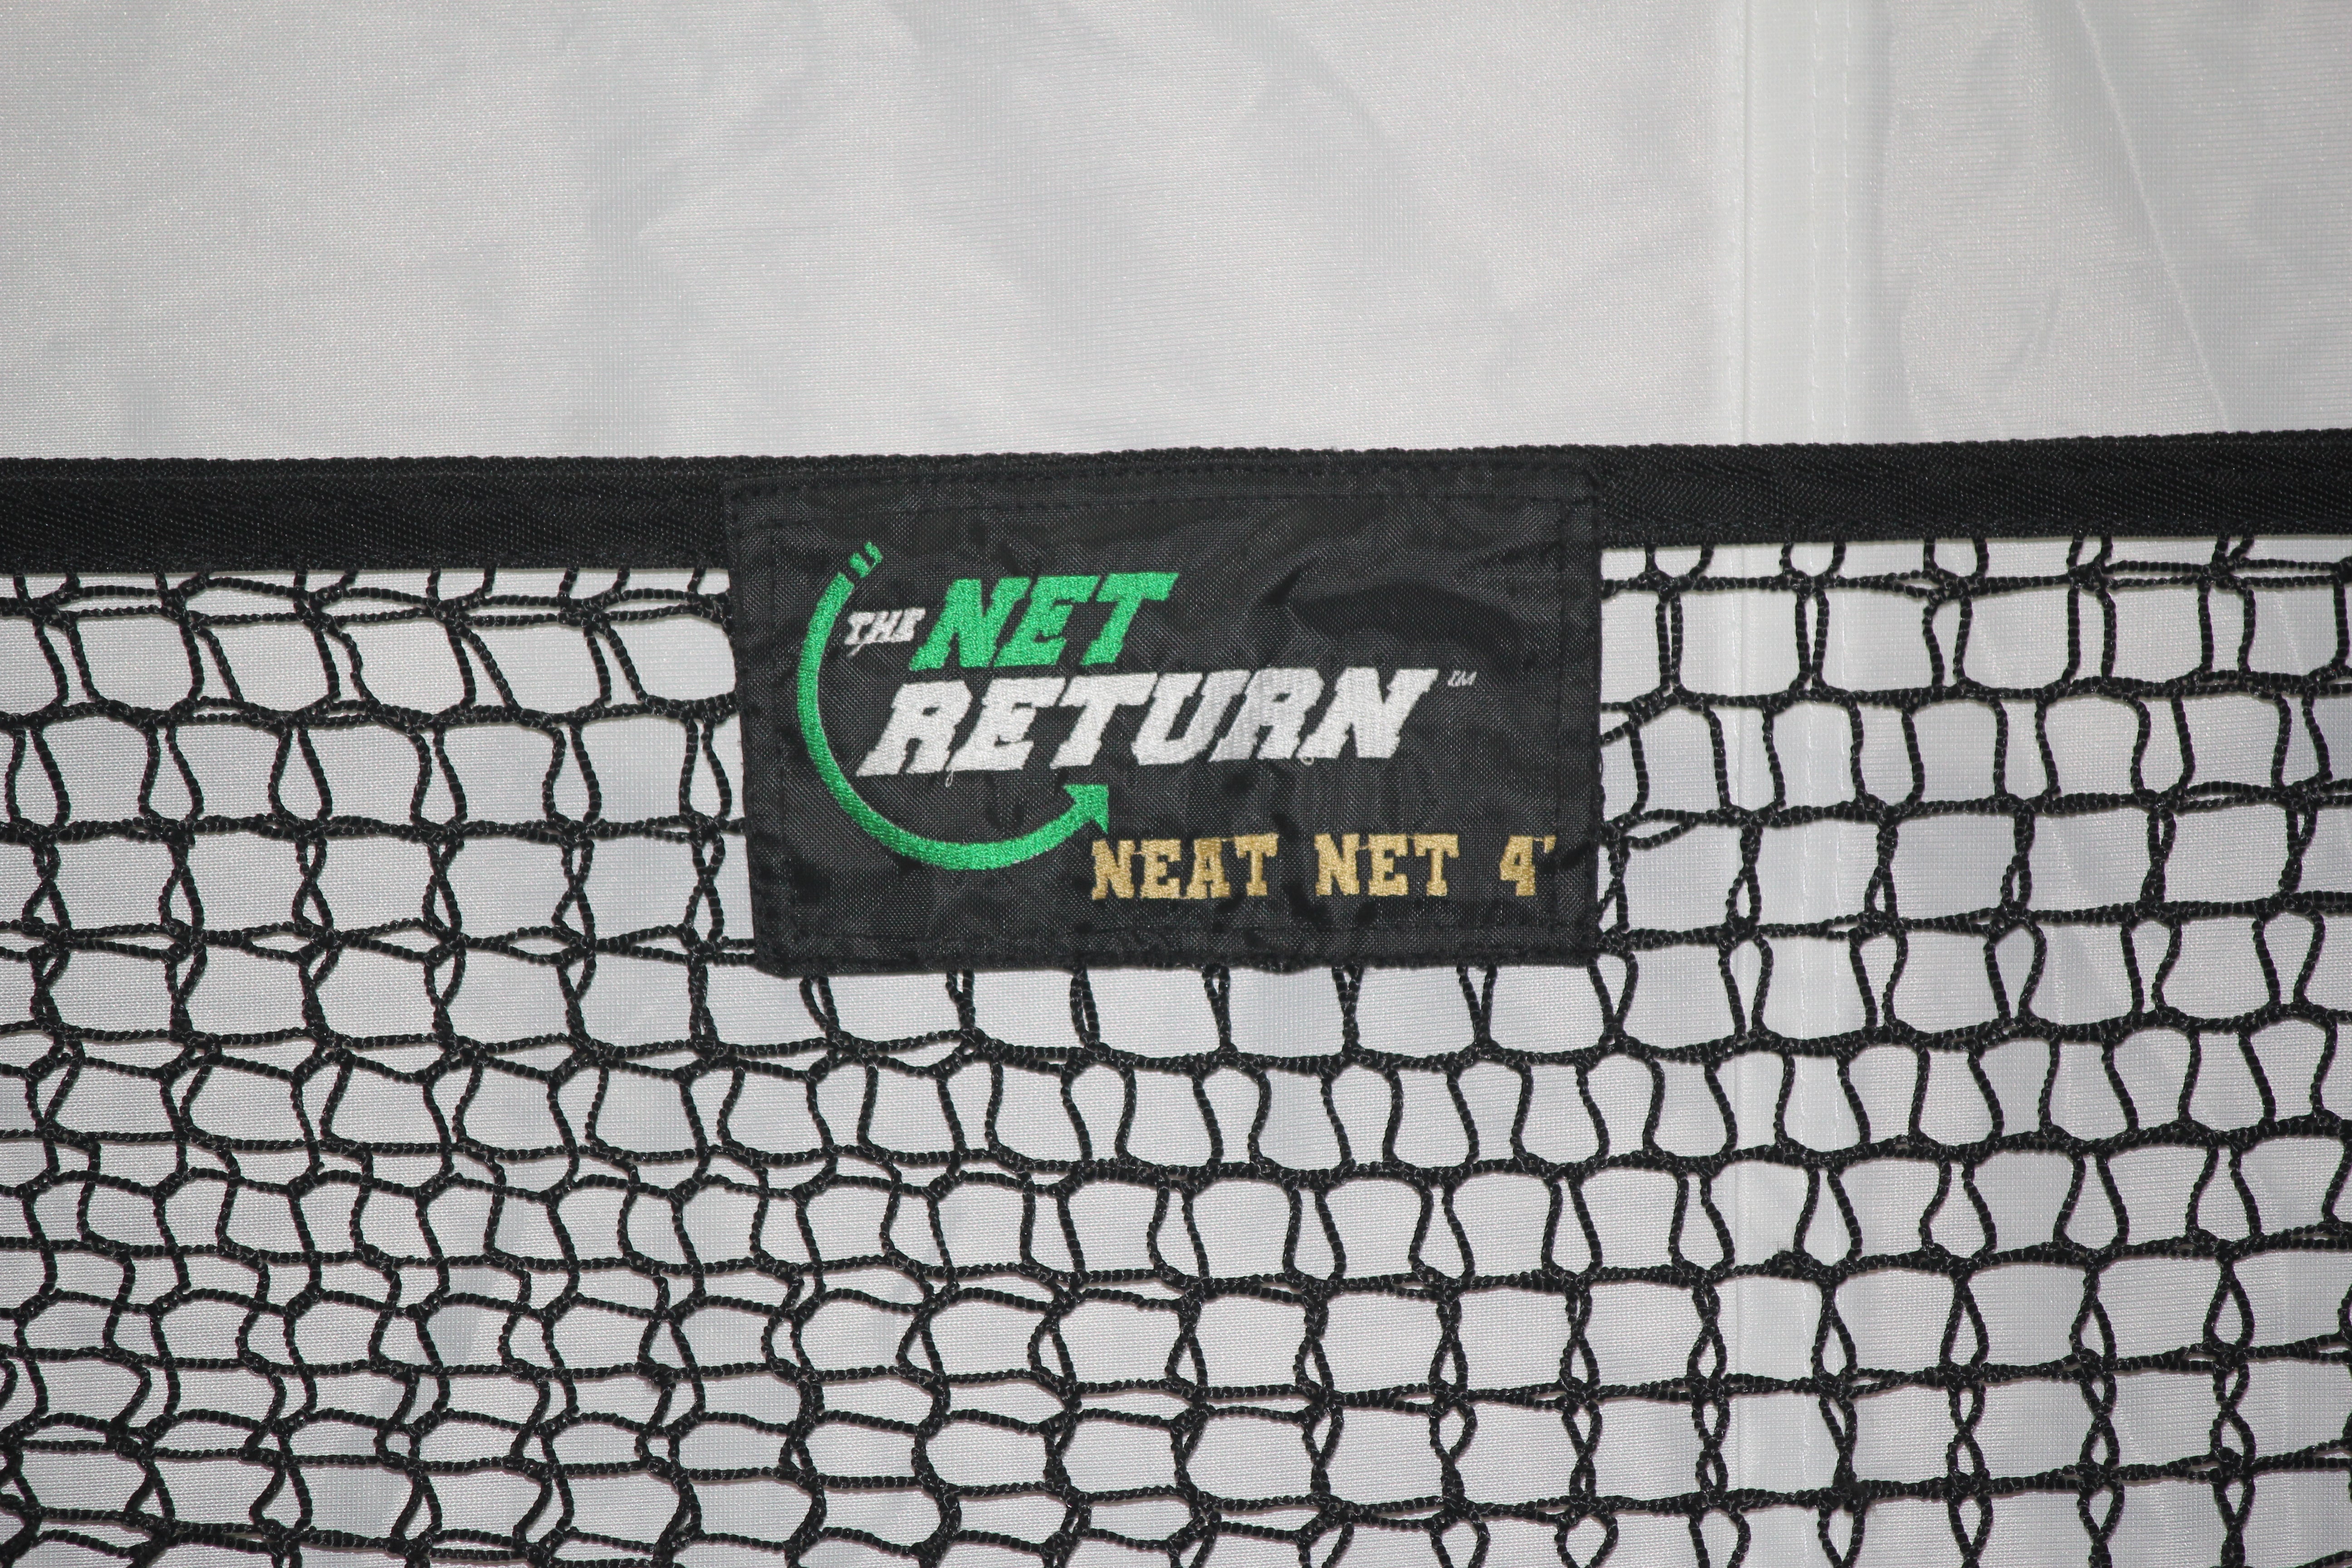 The Net Return Neat Net